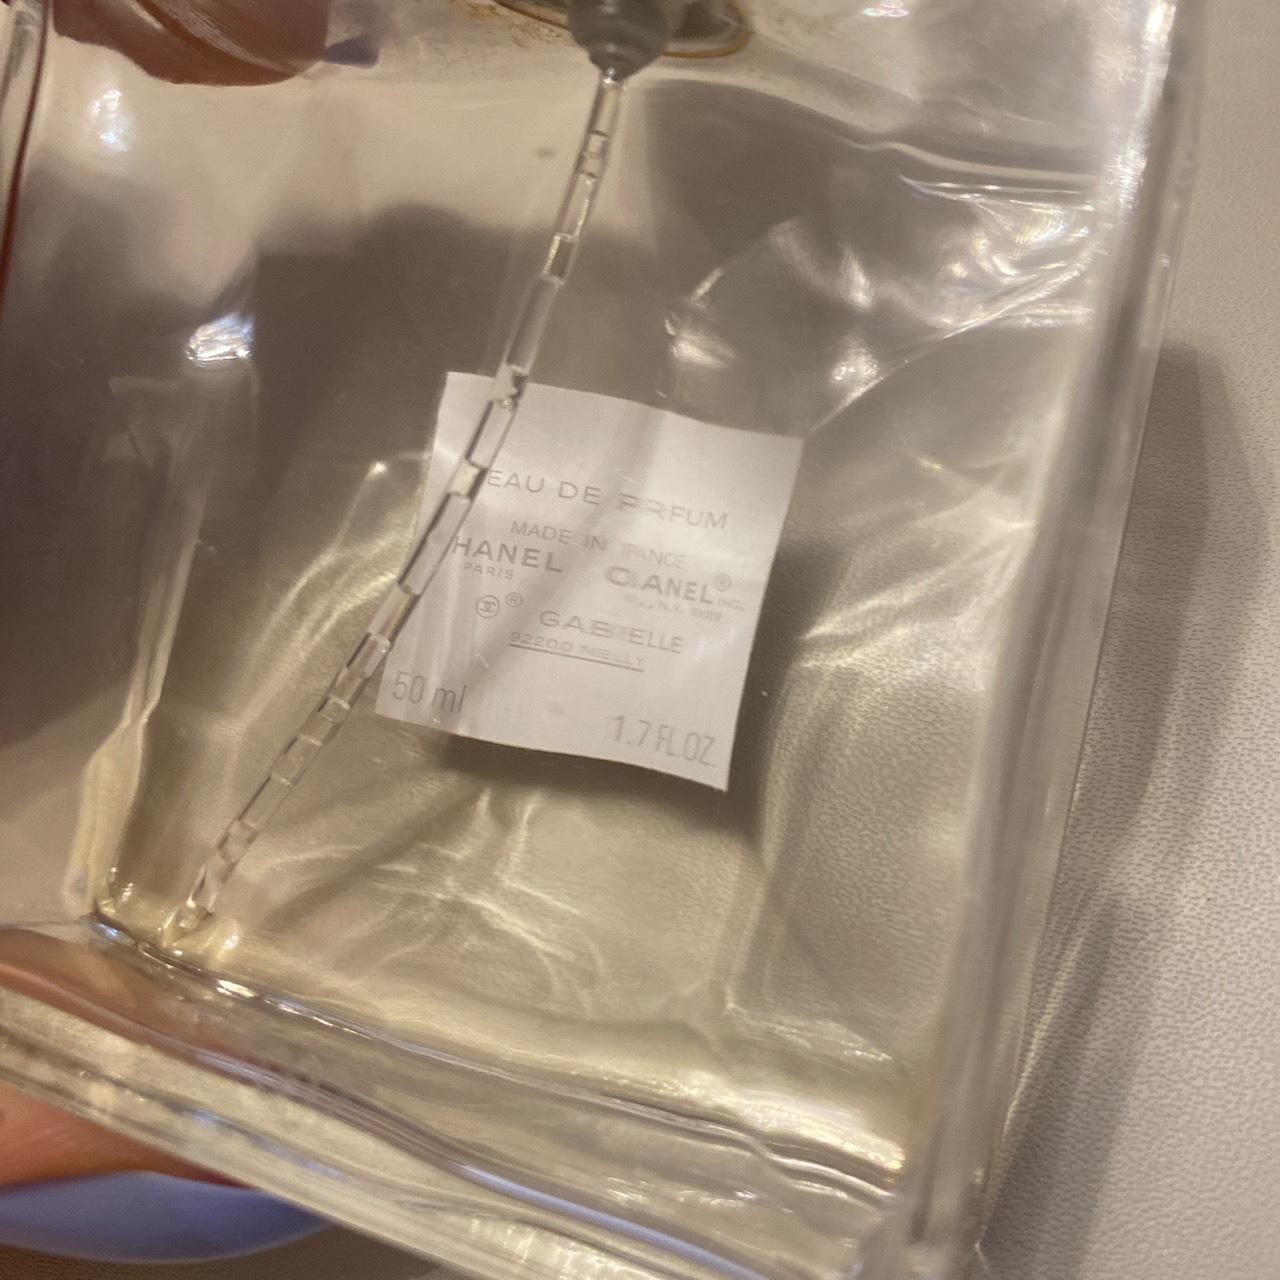 Chanel Gabrielle empty perfume bottle, 50ml size no - Depop